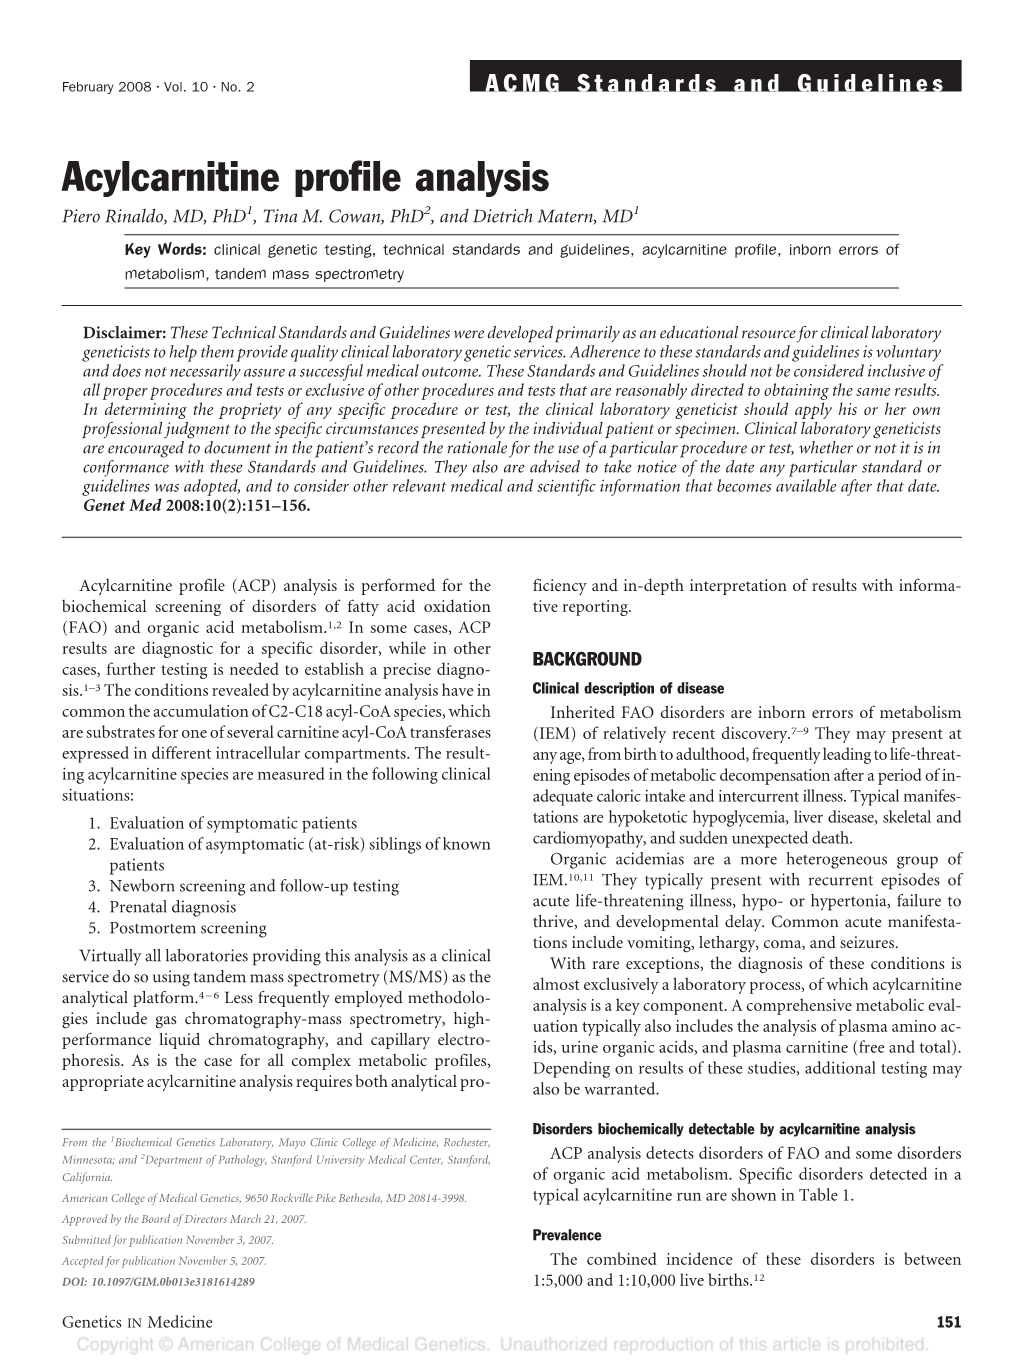 Acylcarnitine Profile Analysis Piero Rinaldo, MD, Phd1, Tina M